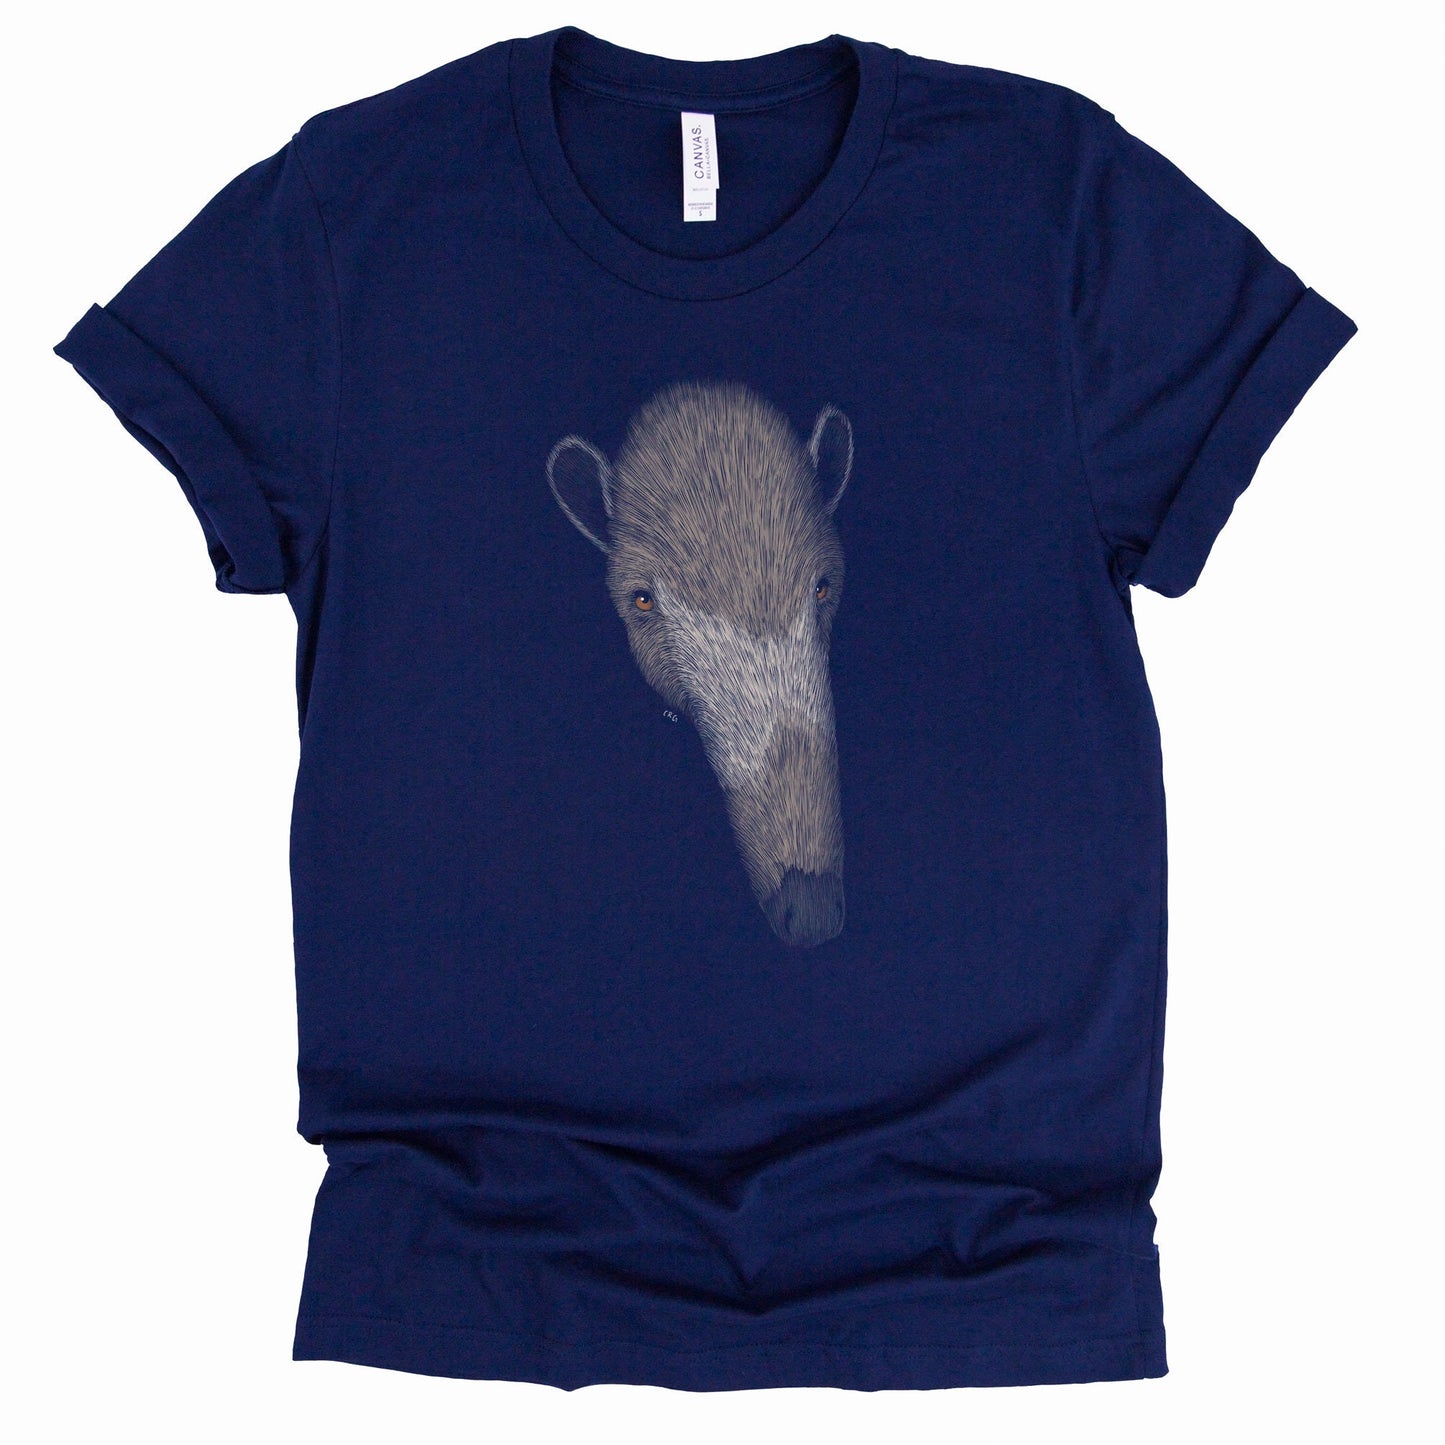 Giant Anteater Shirt